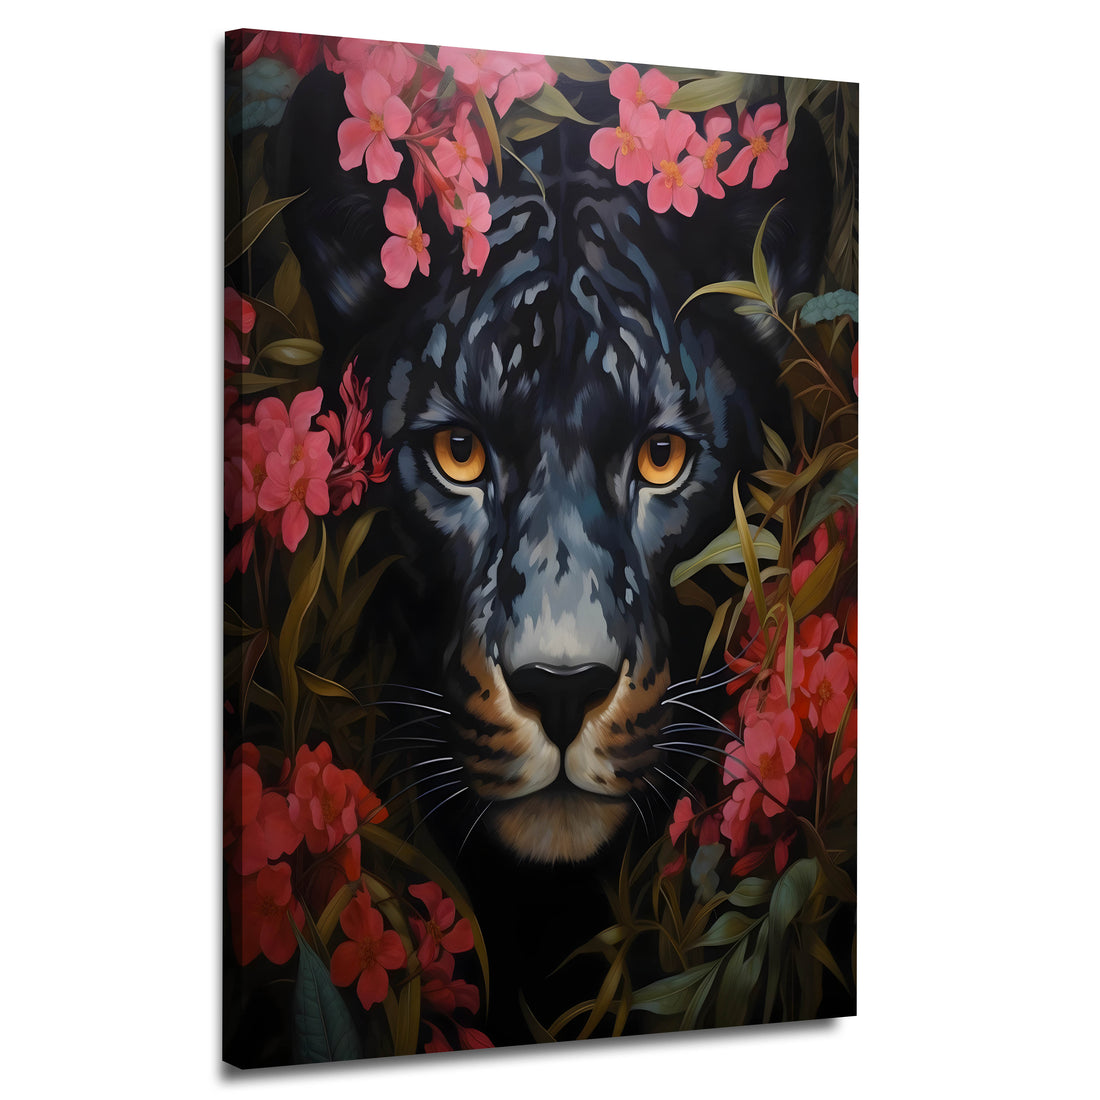 Wandbild abstrakt mit schwarzer Panther